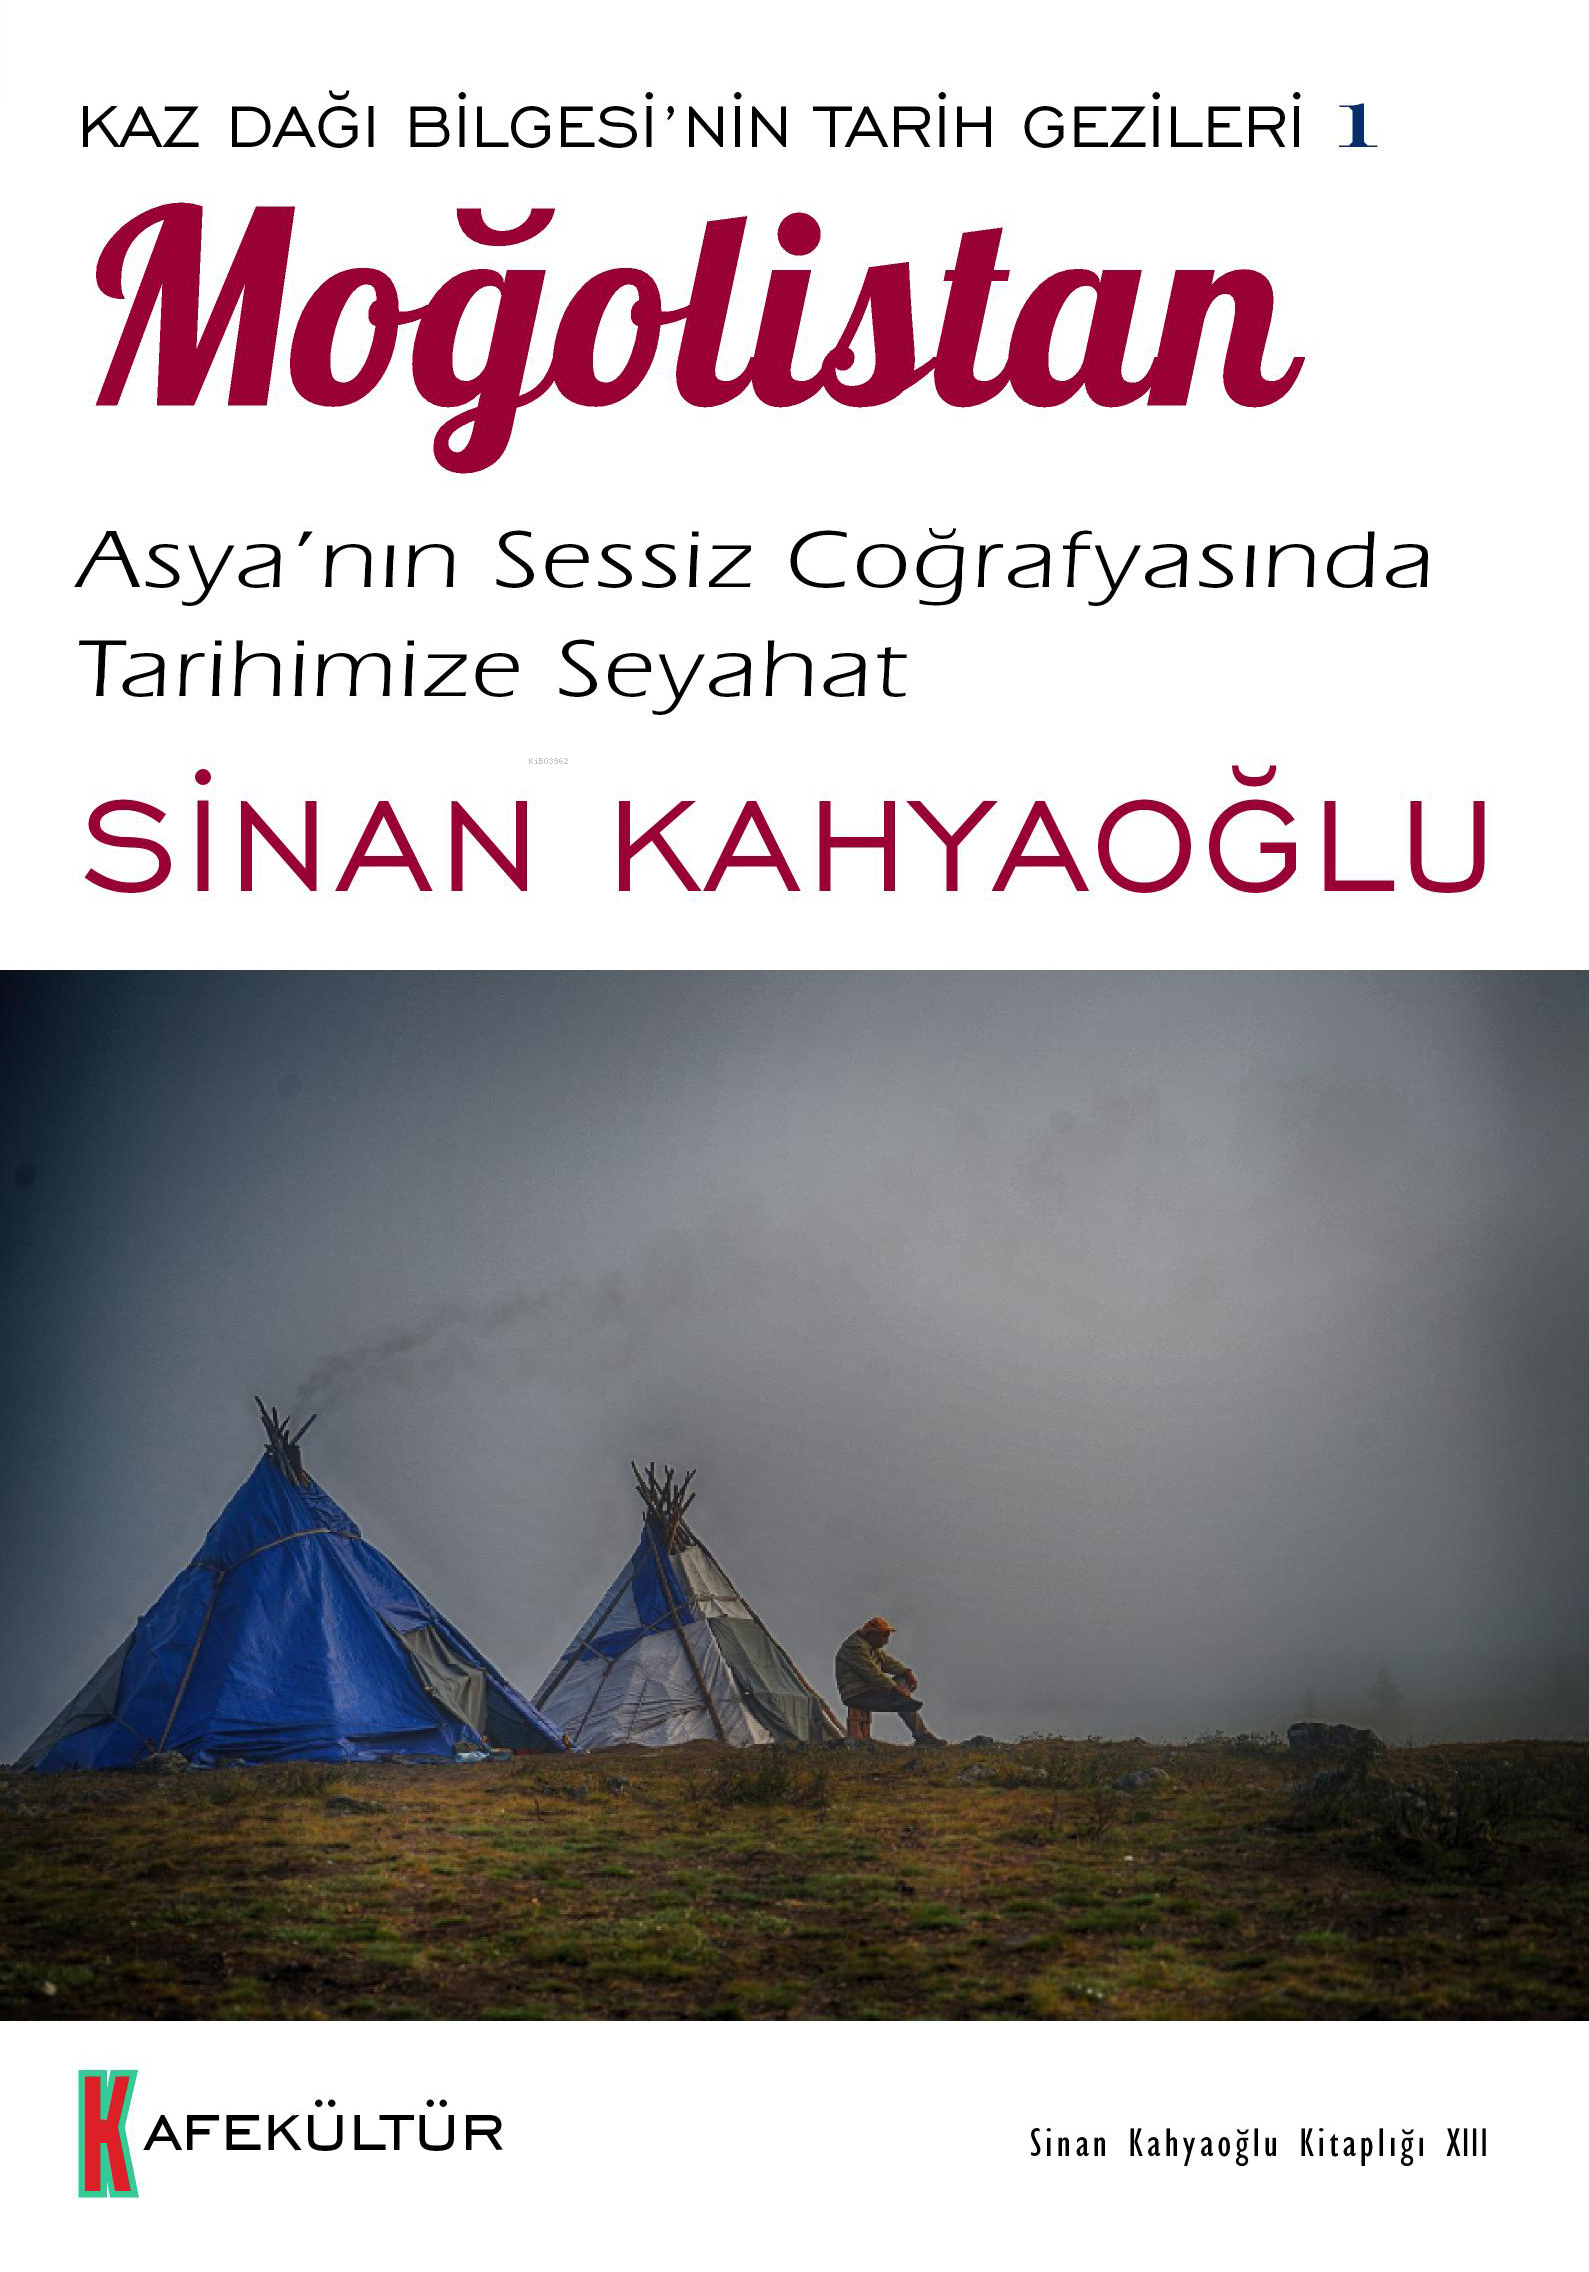 Moğolistan;Kaz Dağı Bilgesi’nin Tarih Gezileri 1